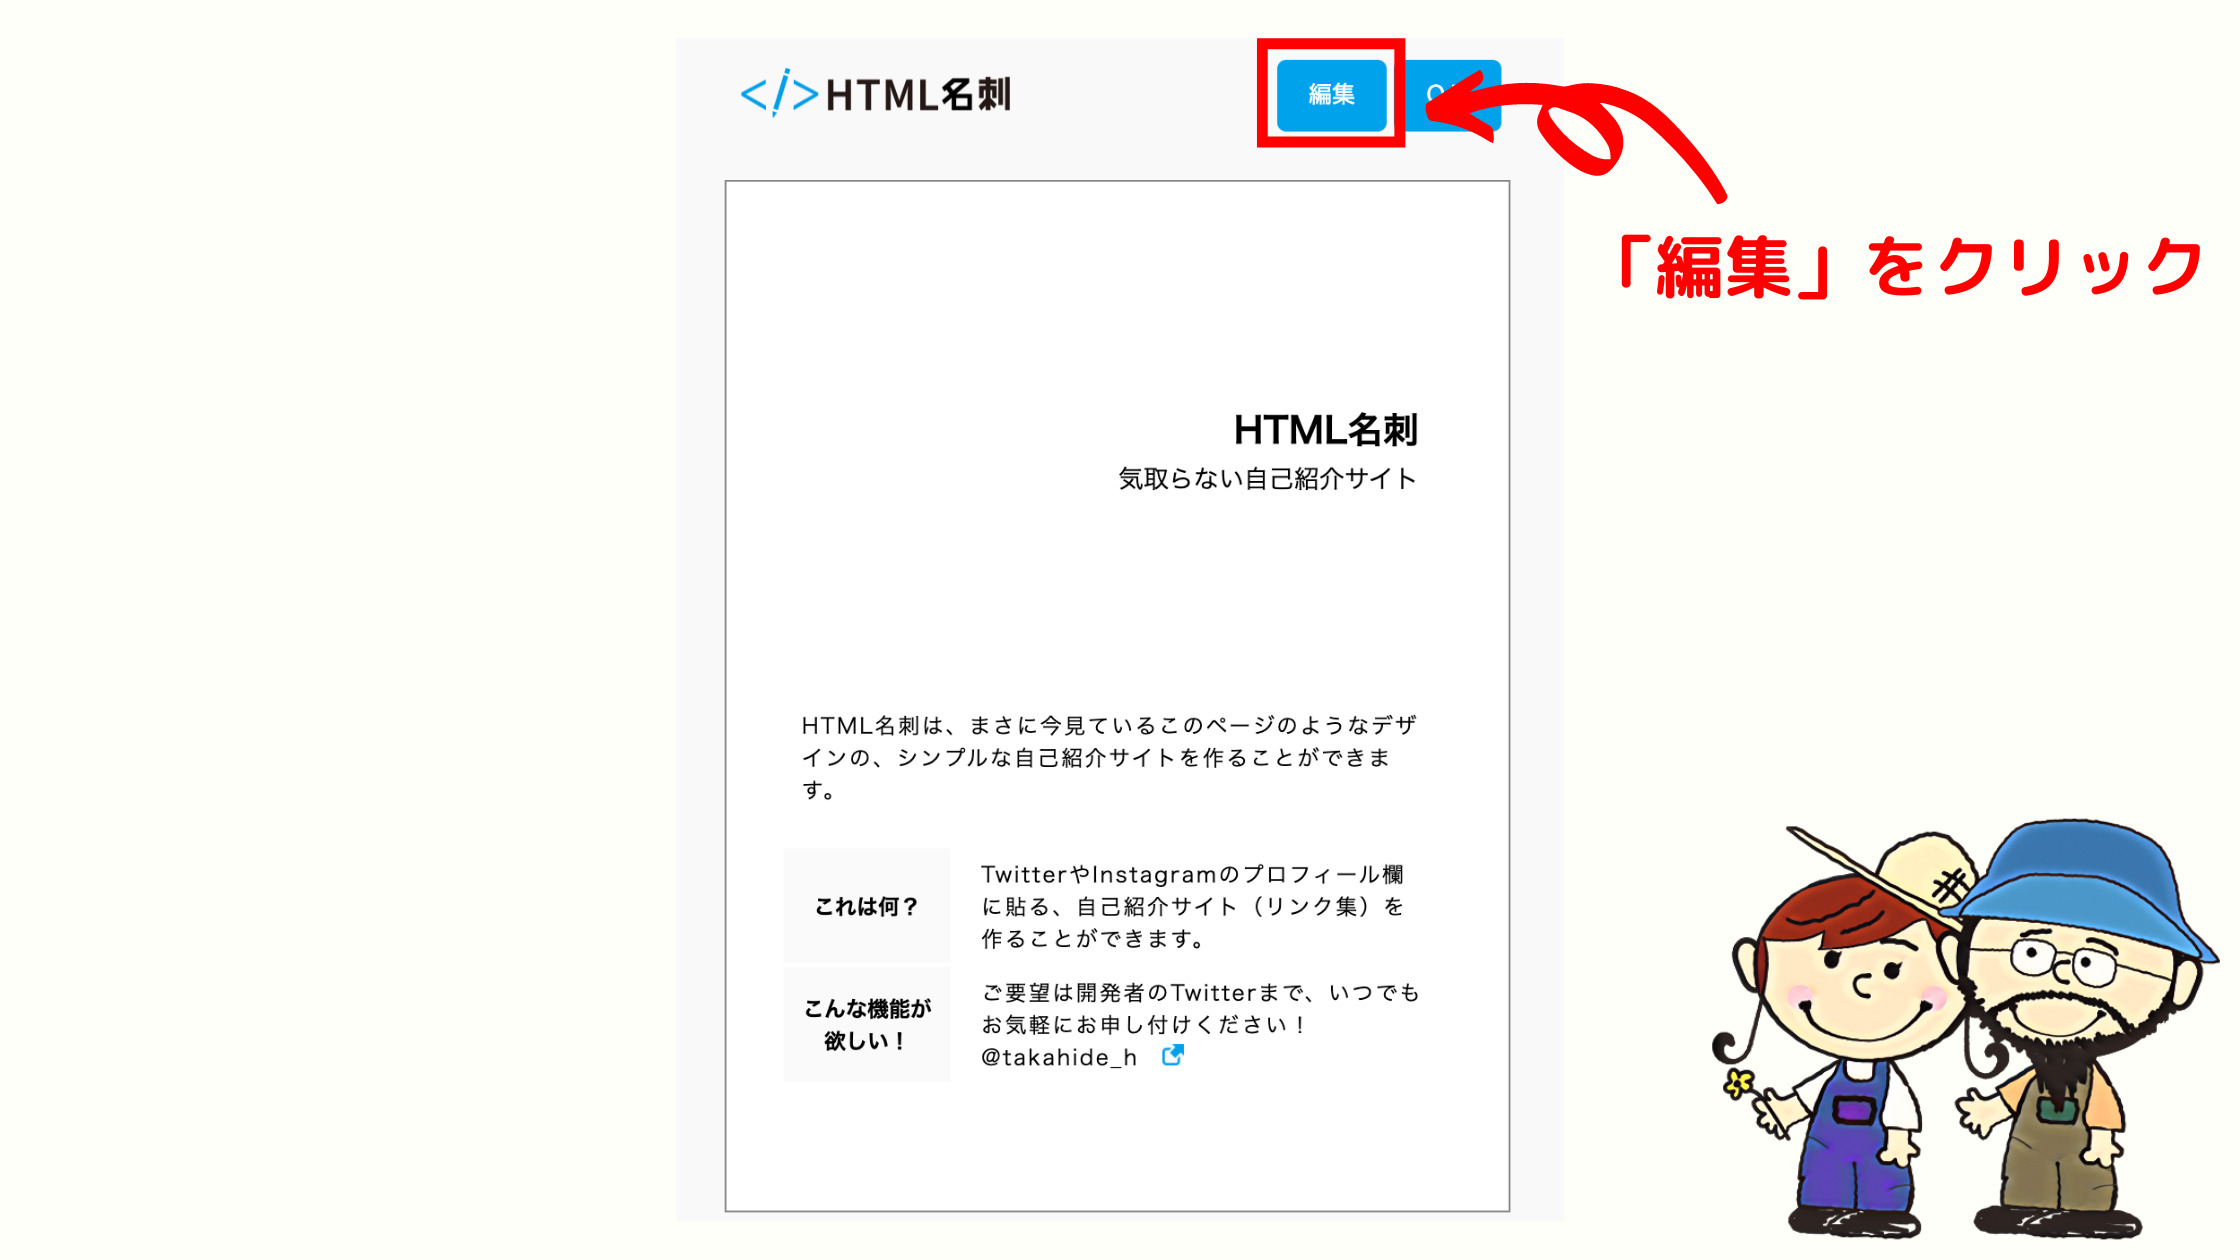 HTML名刺で被リンクを獲得する方法